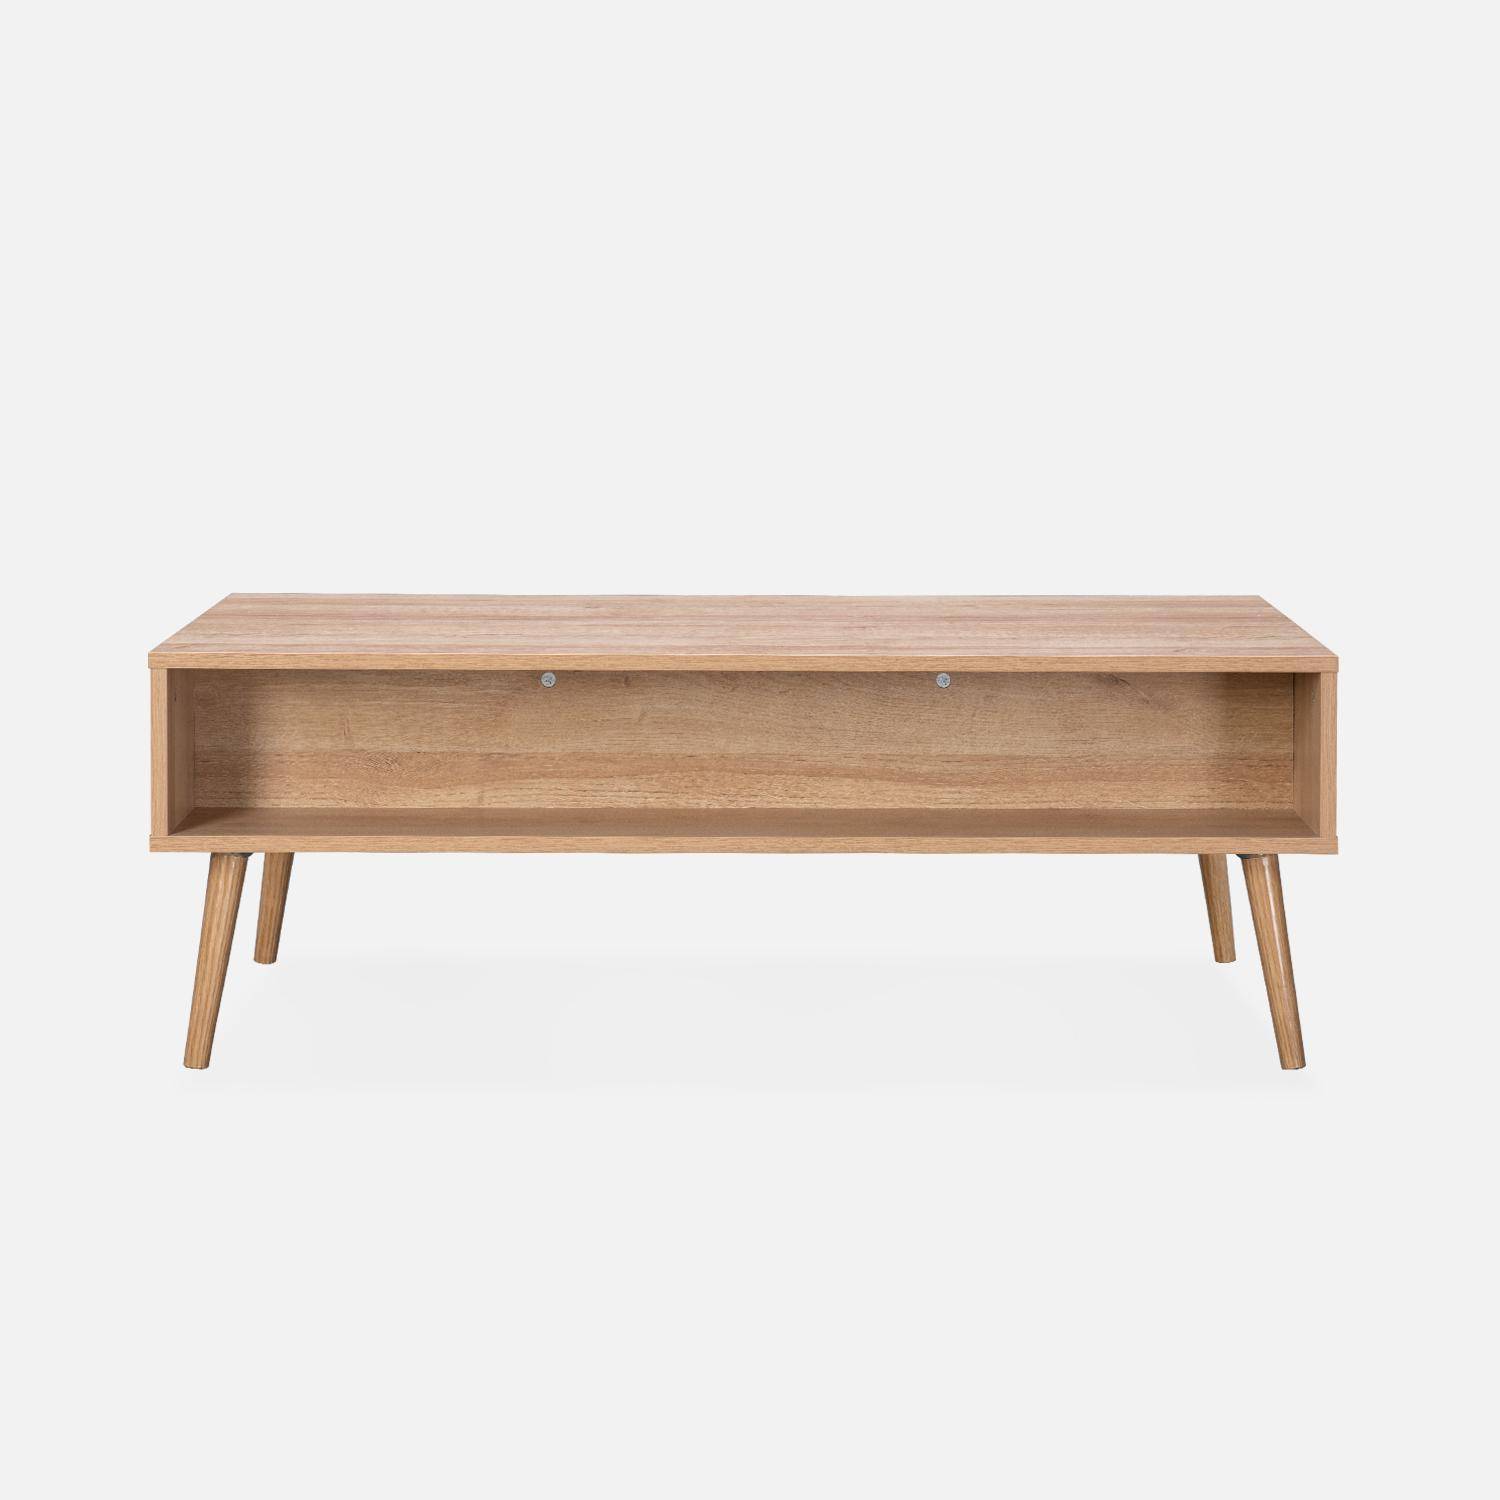 Tavolino, Eva, scandinavo in canna arrotondata e legno, 1 cassetto reversibile L110 x L59 x H39cm Photo4